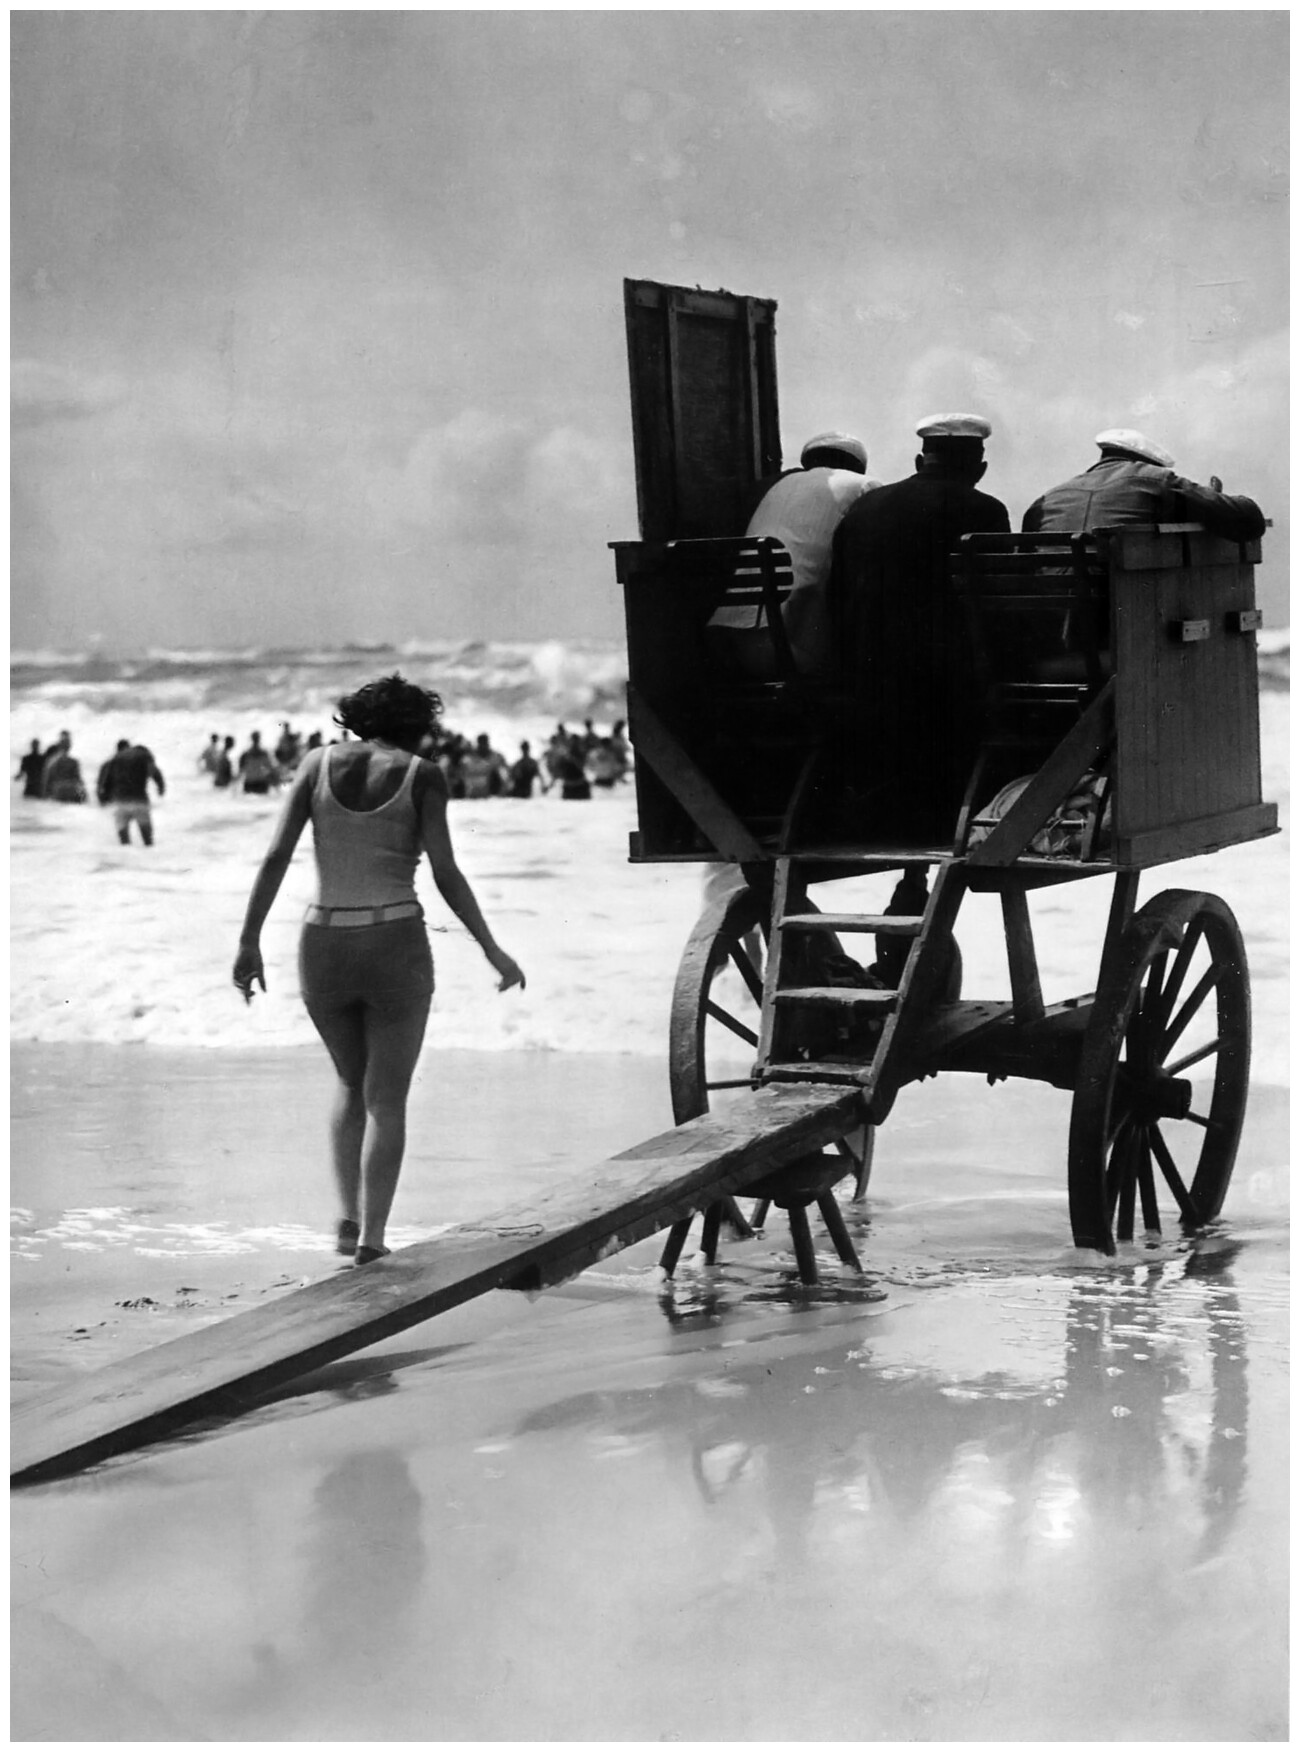 Передвижная вышка спасателей на пляже, Германия, ок. 1929. Фотограф Мартин Мункачи